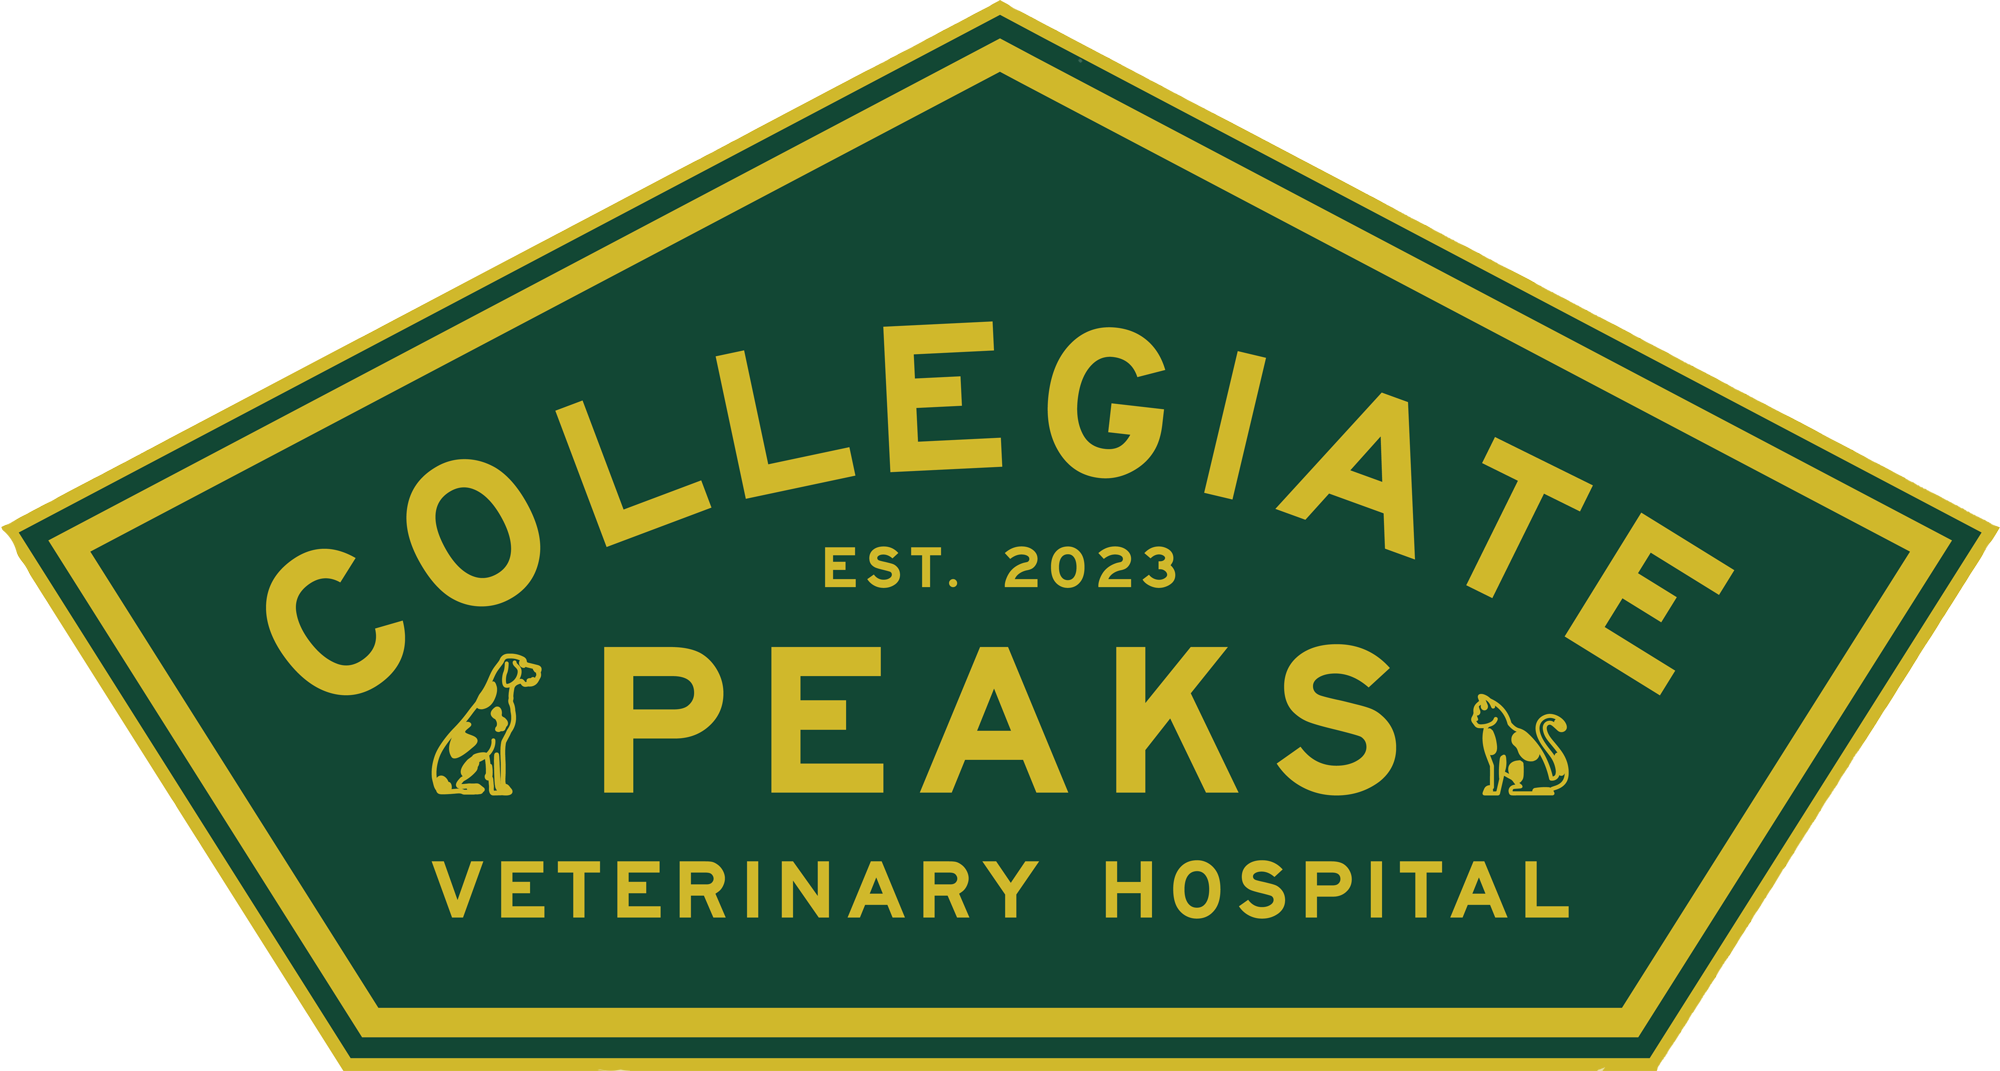 Collegiate Peaks Veterinary Hospital